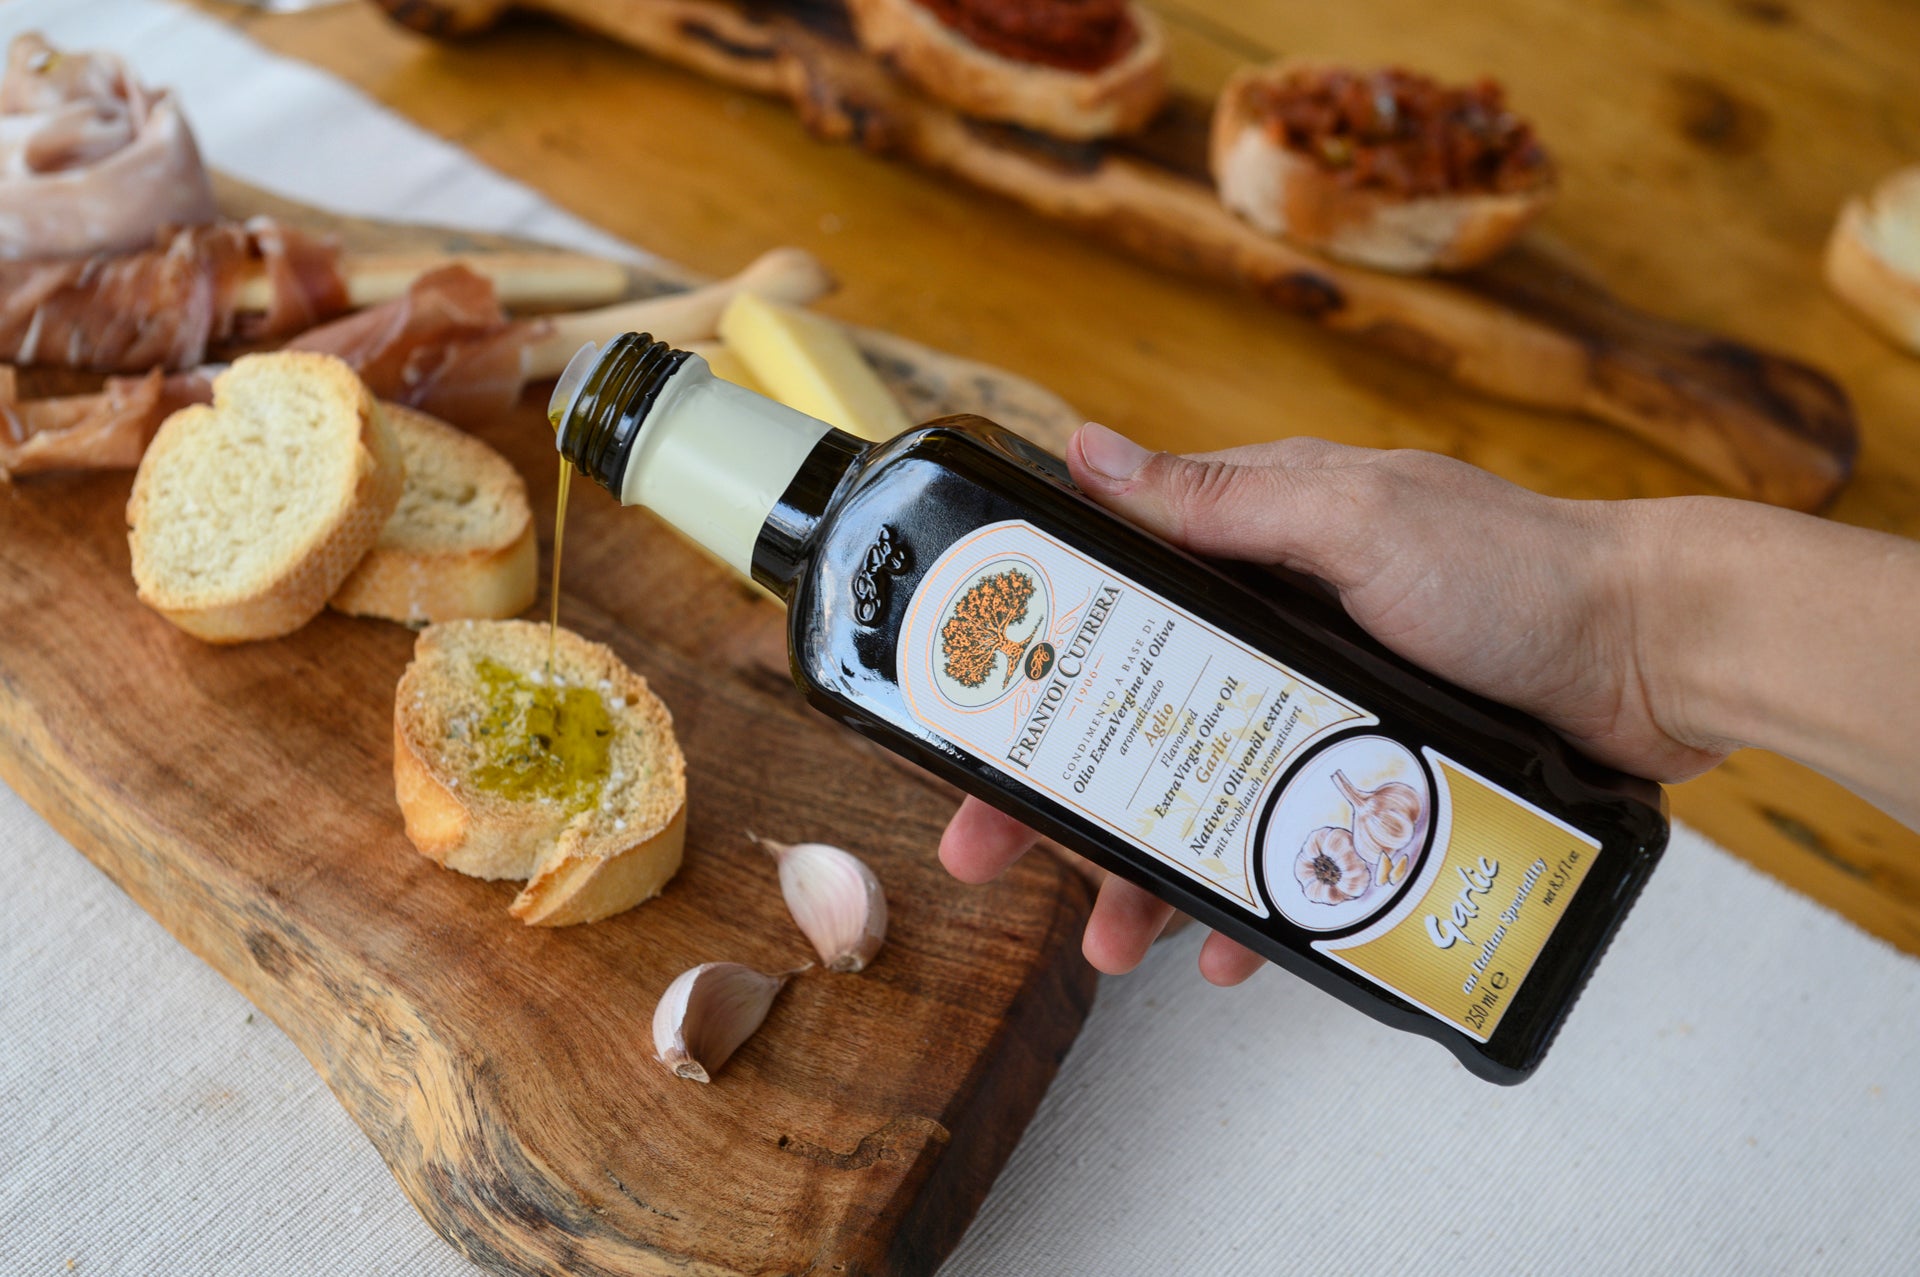 Condimento a base di olio extra vergine di oliva 98% aromatizzato all'aglio